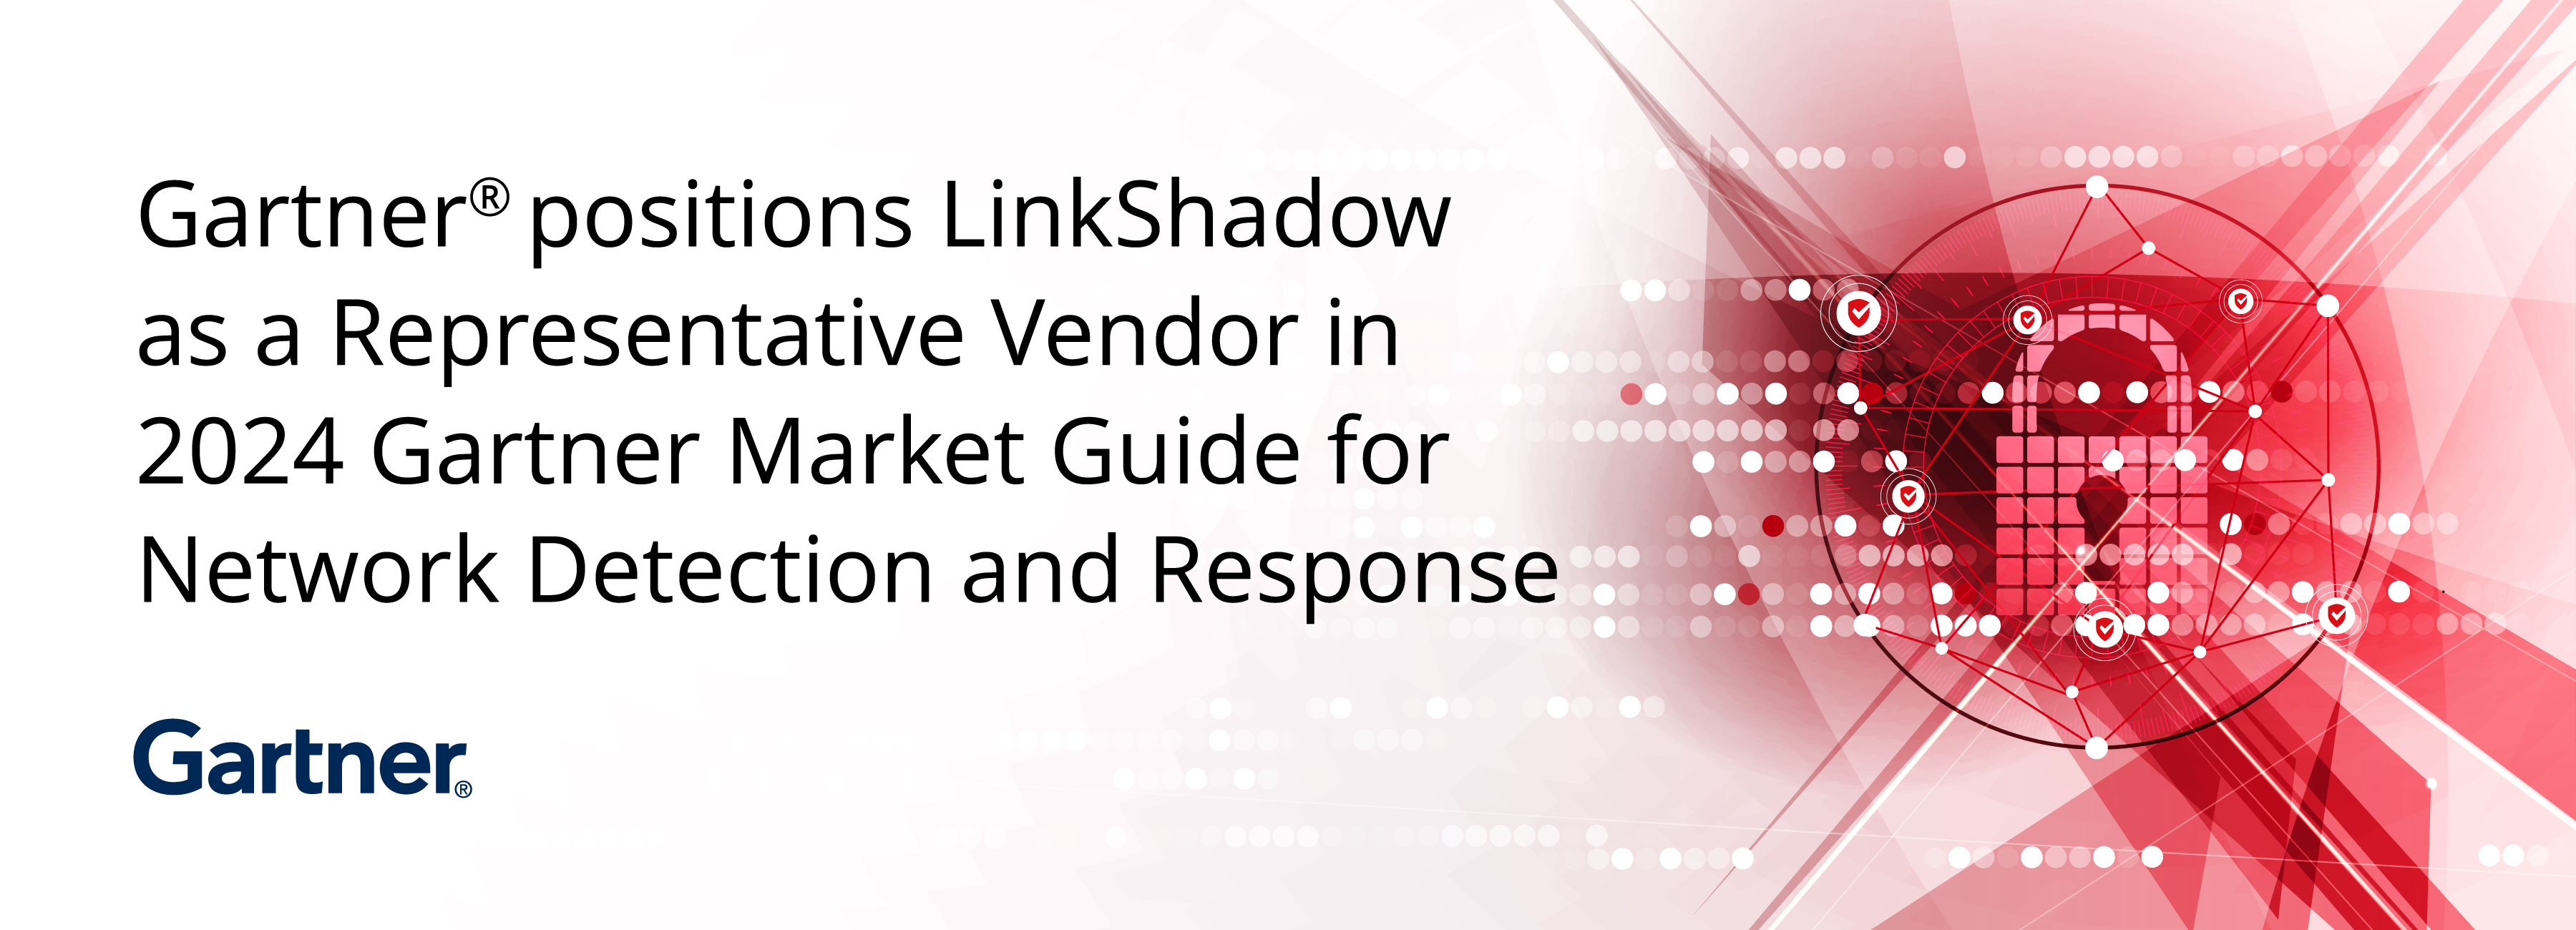 LinkShadow 2024 Gartner Market Report